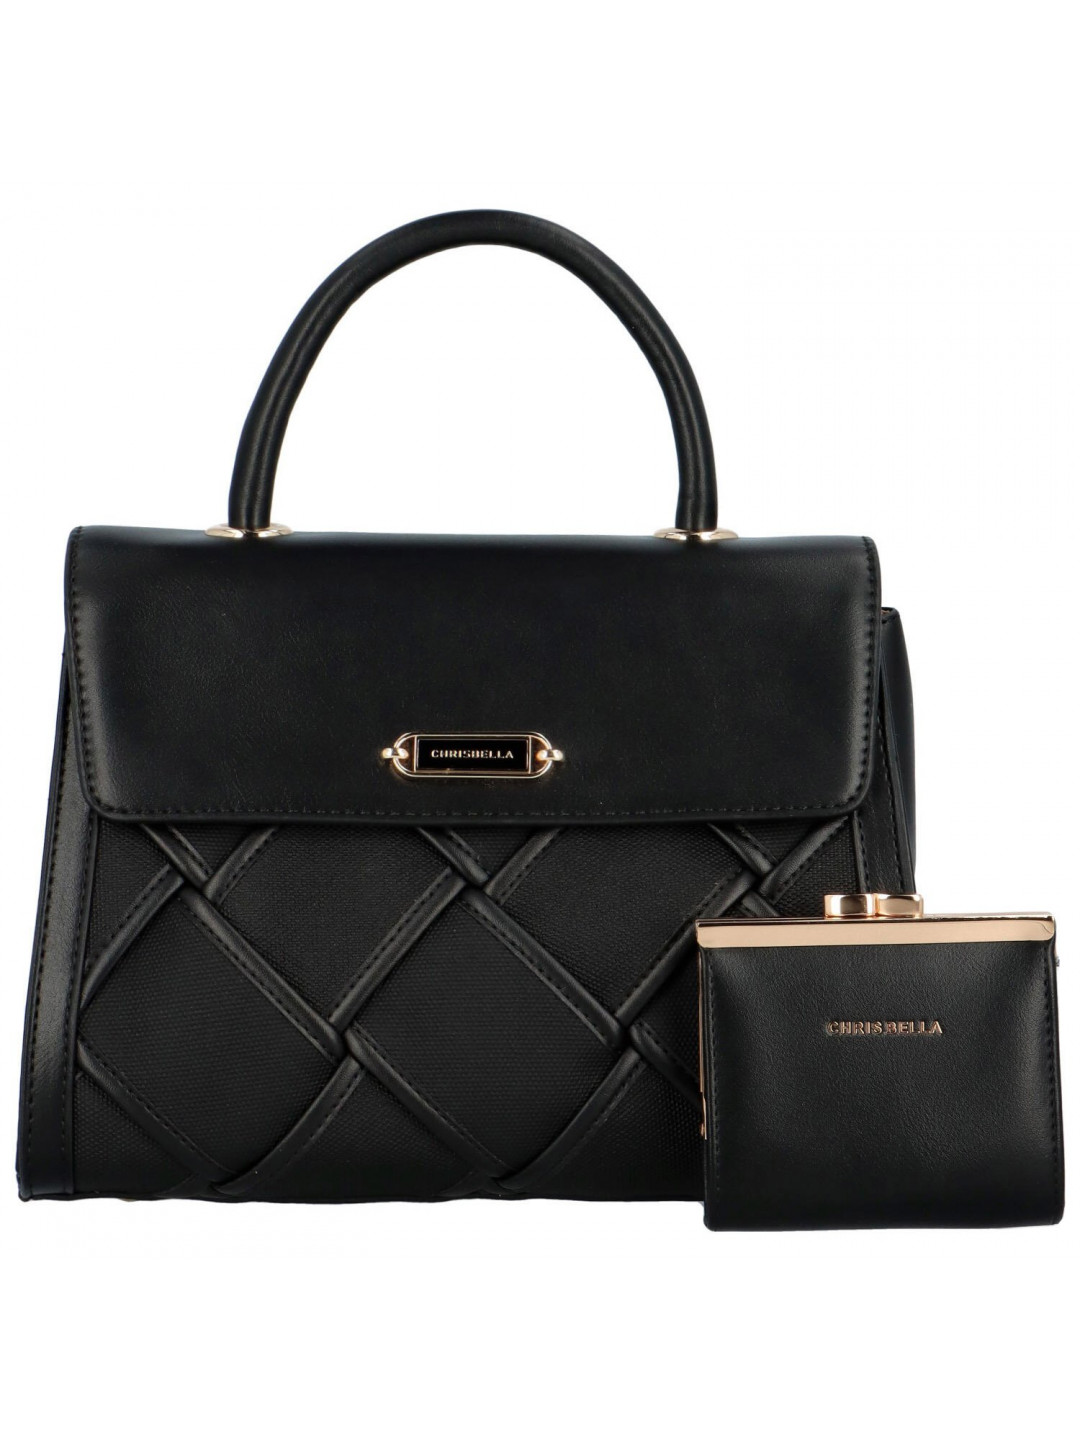 Luxusní sada dámské kabelky do ruky s peněženkou Ellenia černá